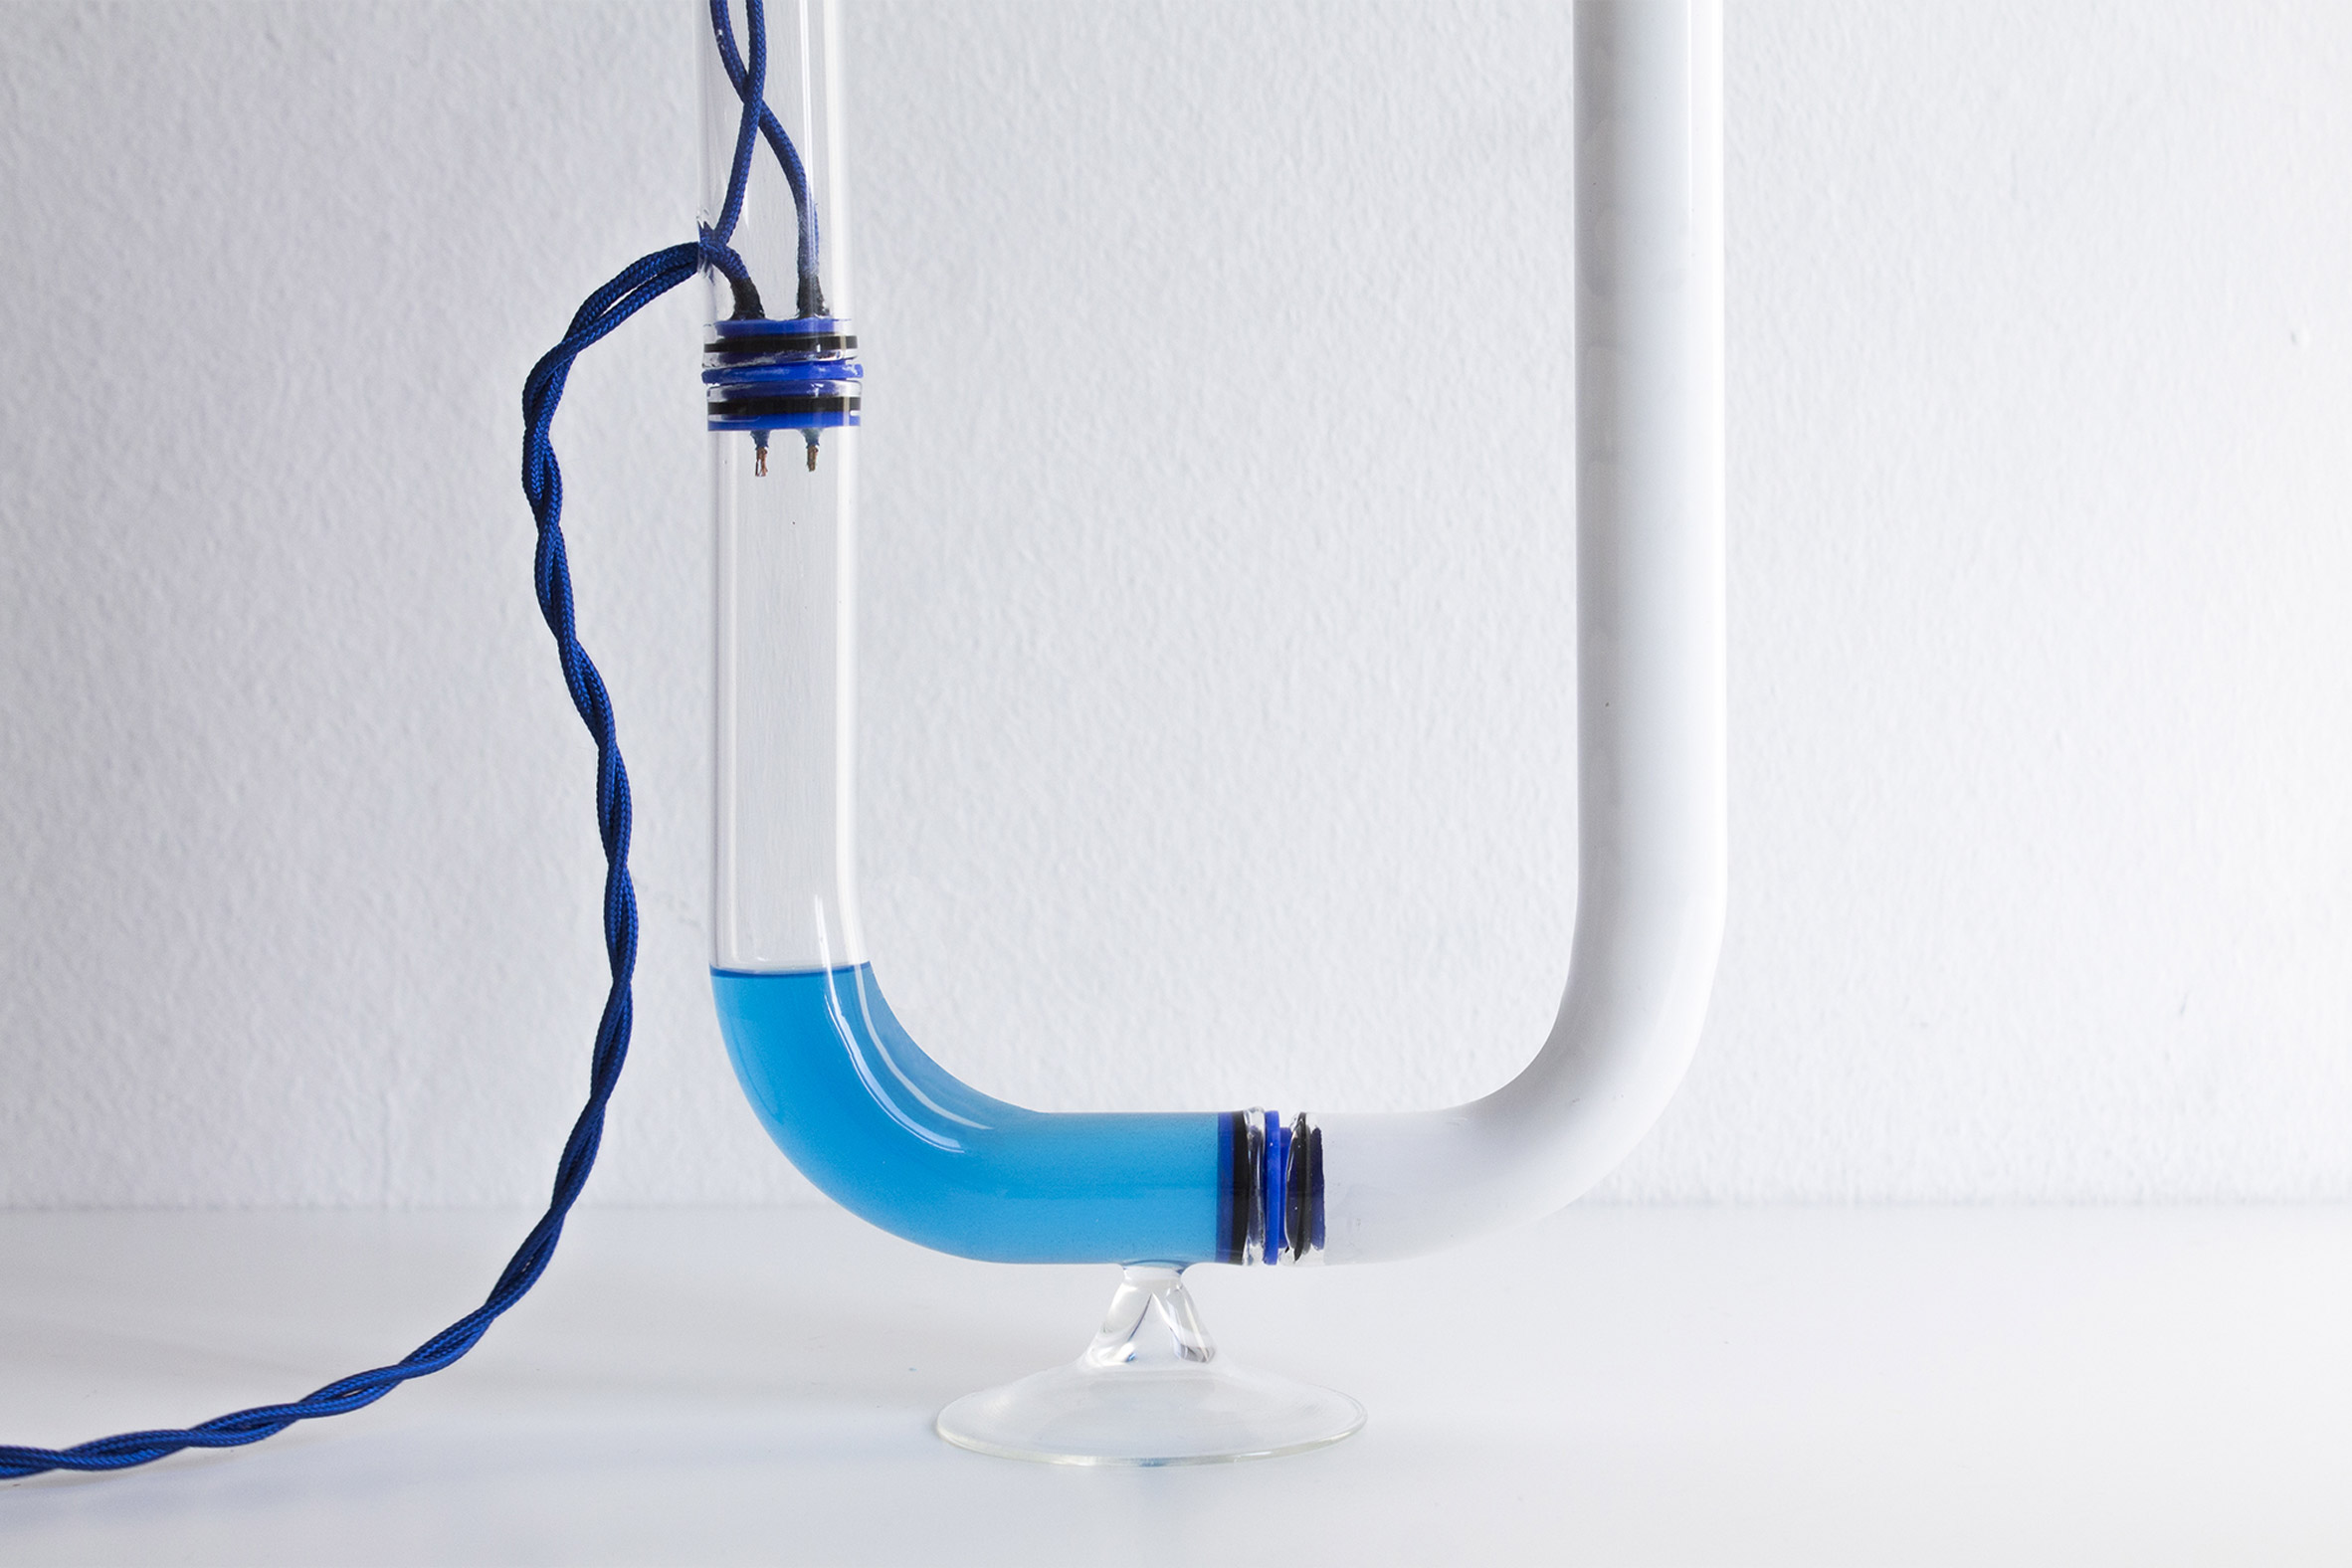 Tubular Circuiti Liquidi lamp uses blue liquid to activate light